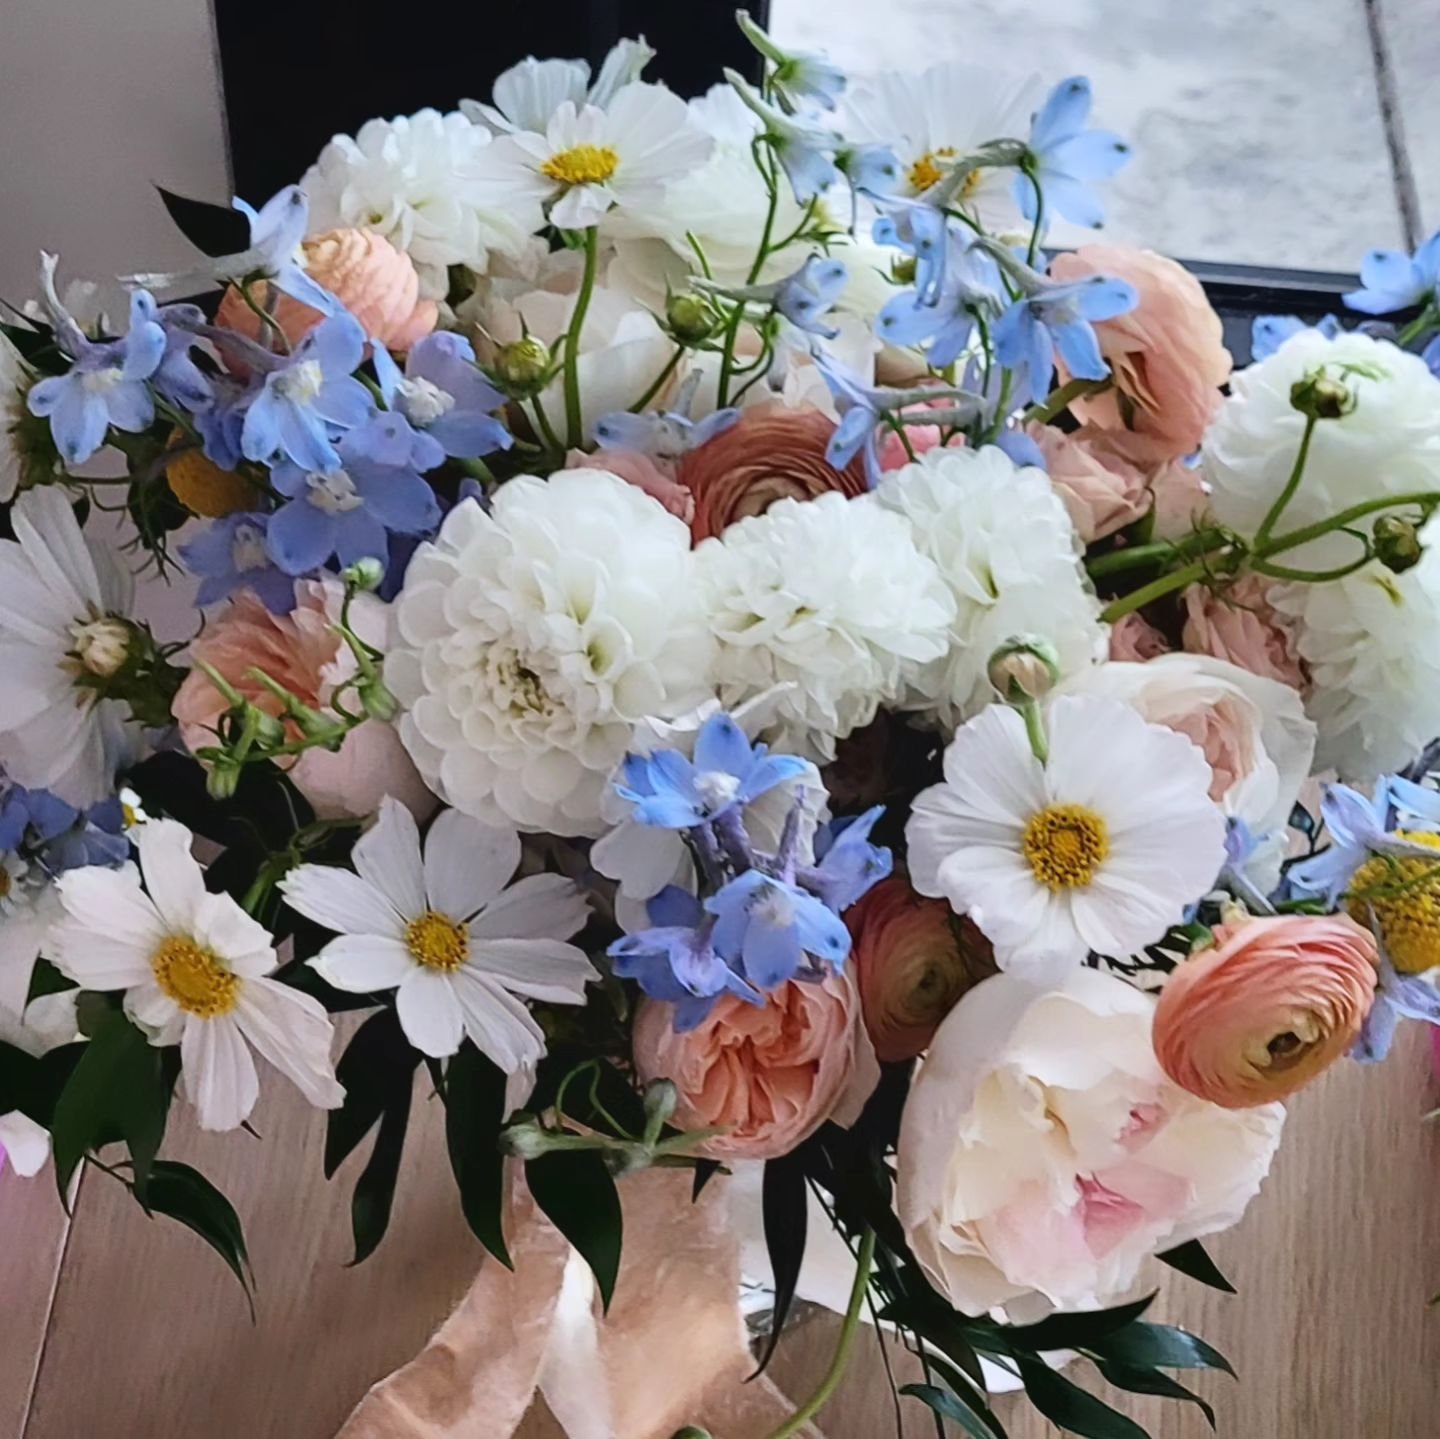 Natural gathering of #SpringtimeBlooms #WeddingFlowers #BridalBouquet #DesignedByRainyDiane #PassionAndWeeds #GardenRoses #Cosmos #Ranunculus #Delphinium #BallDahlia #Delphinium